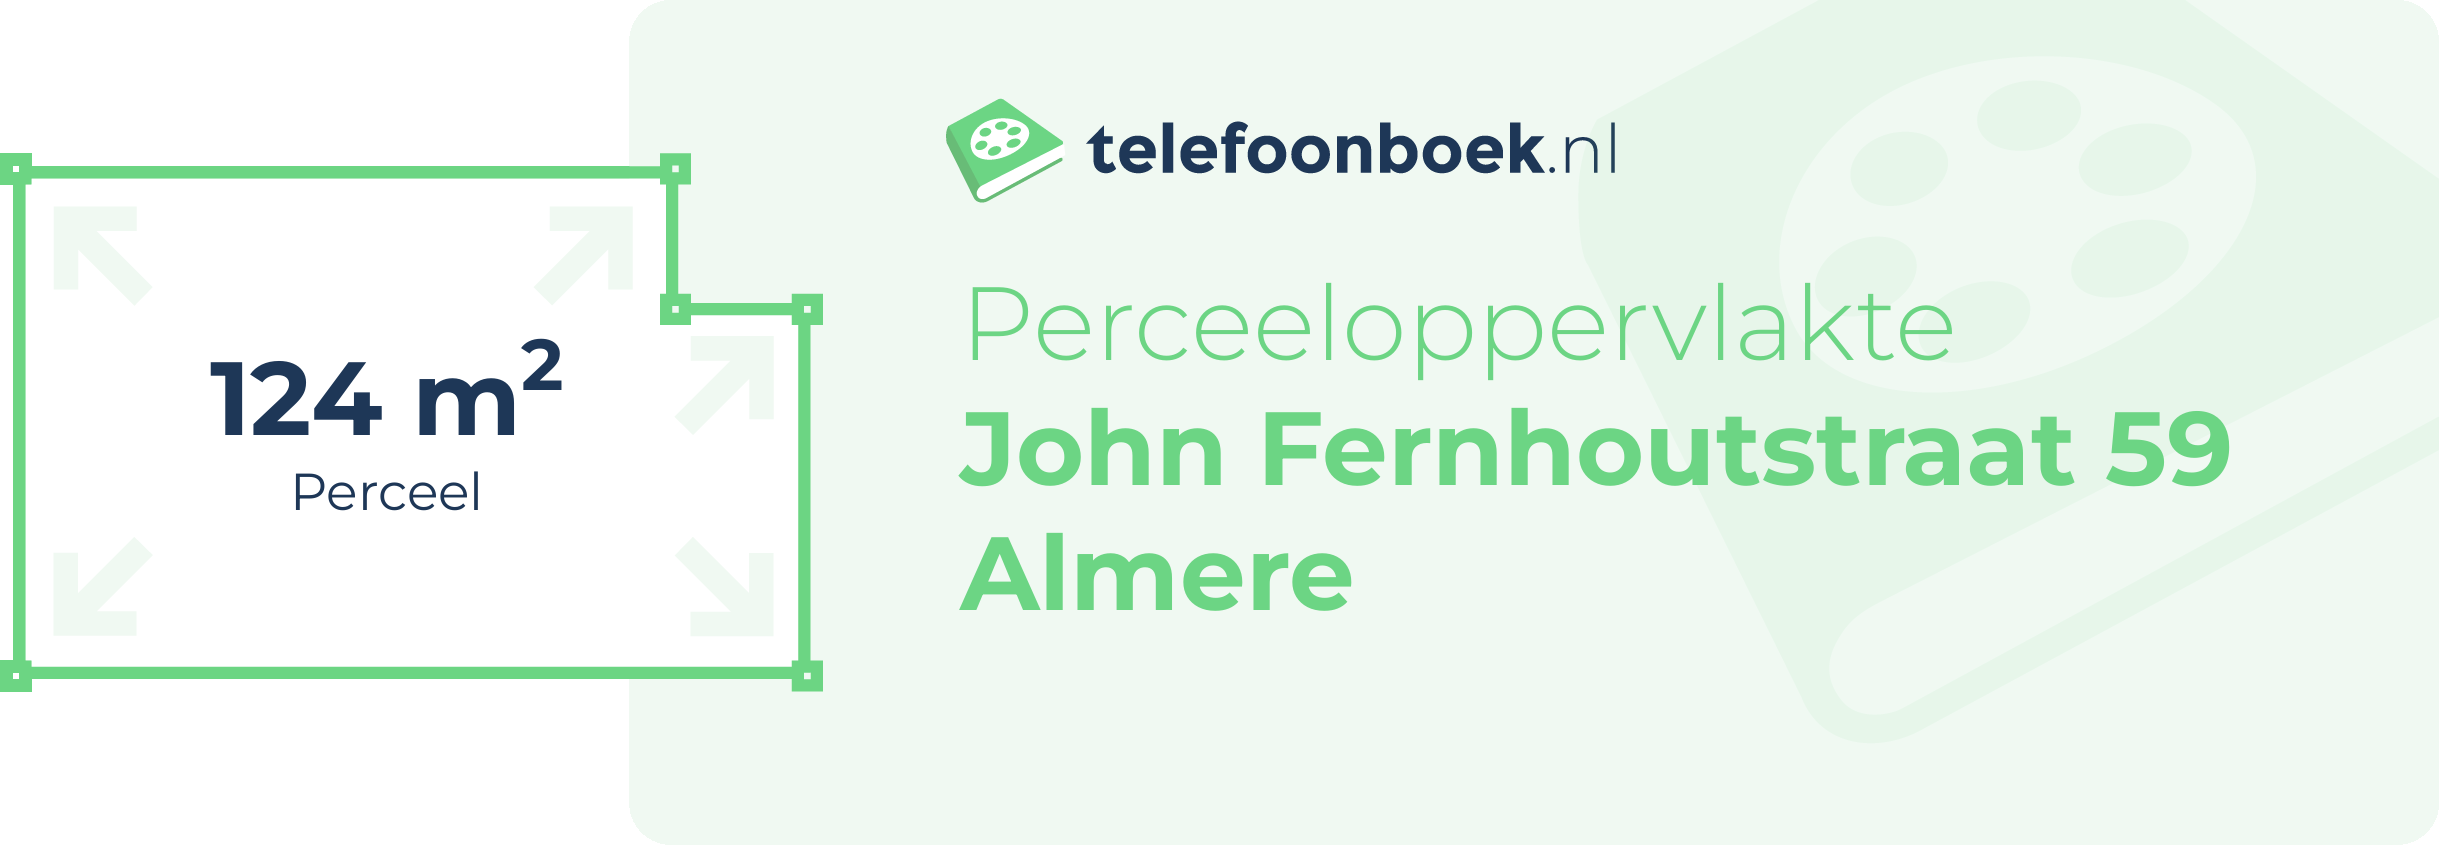 Perceeloppervlakte John Fernhoutstraat 59 Almere